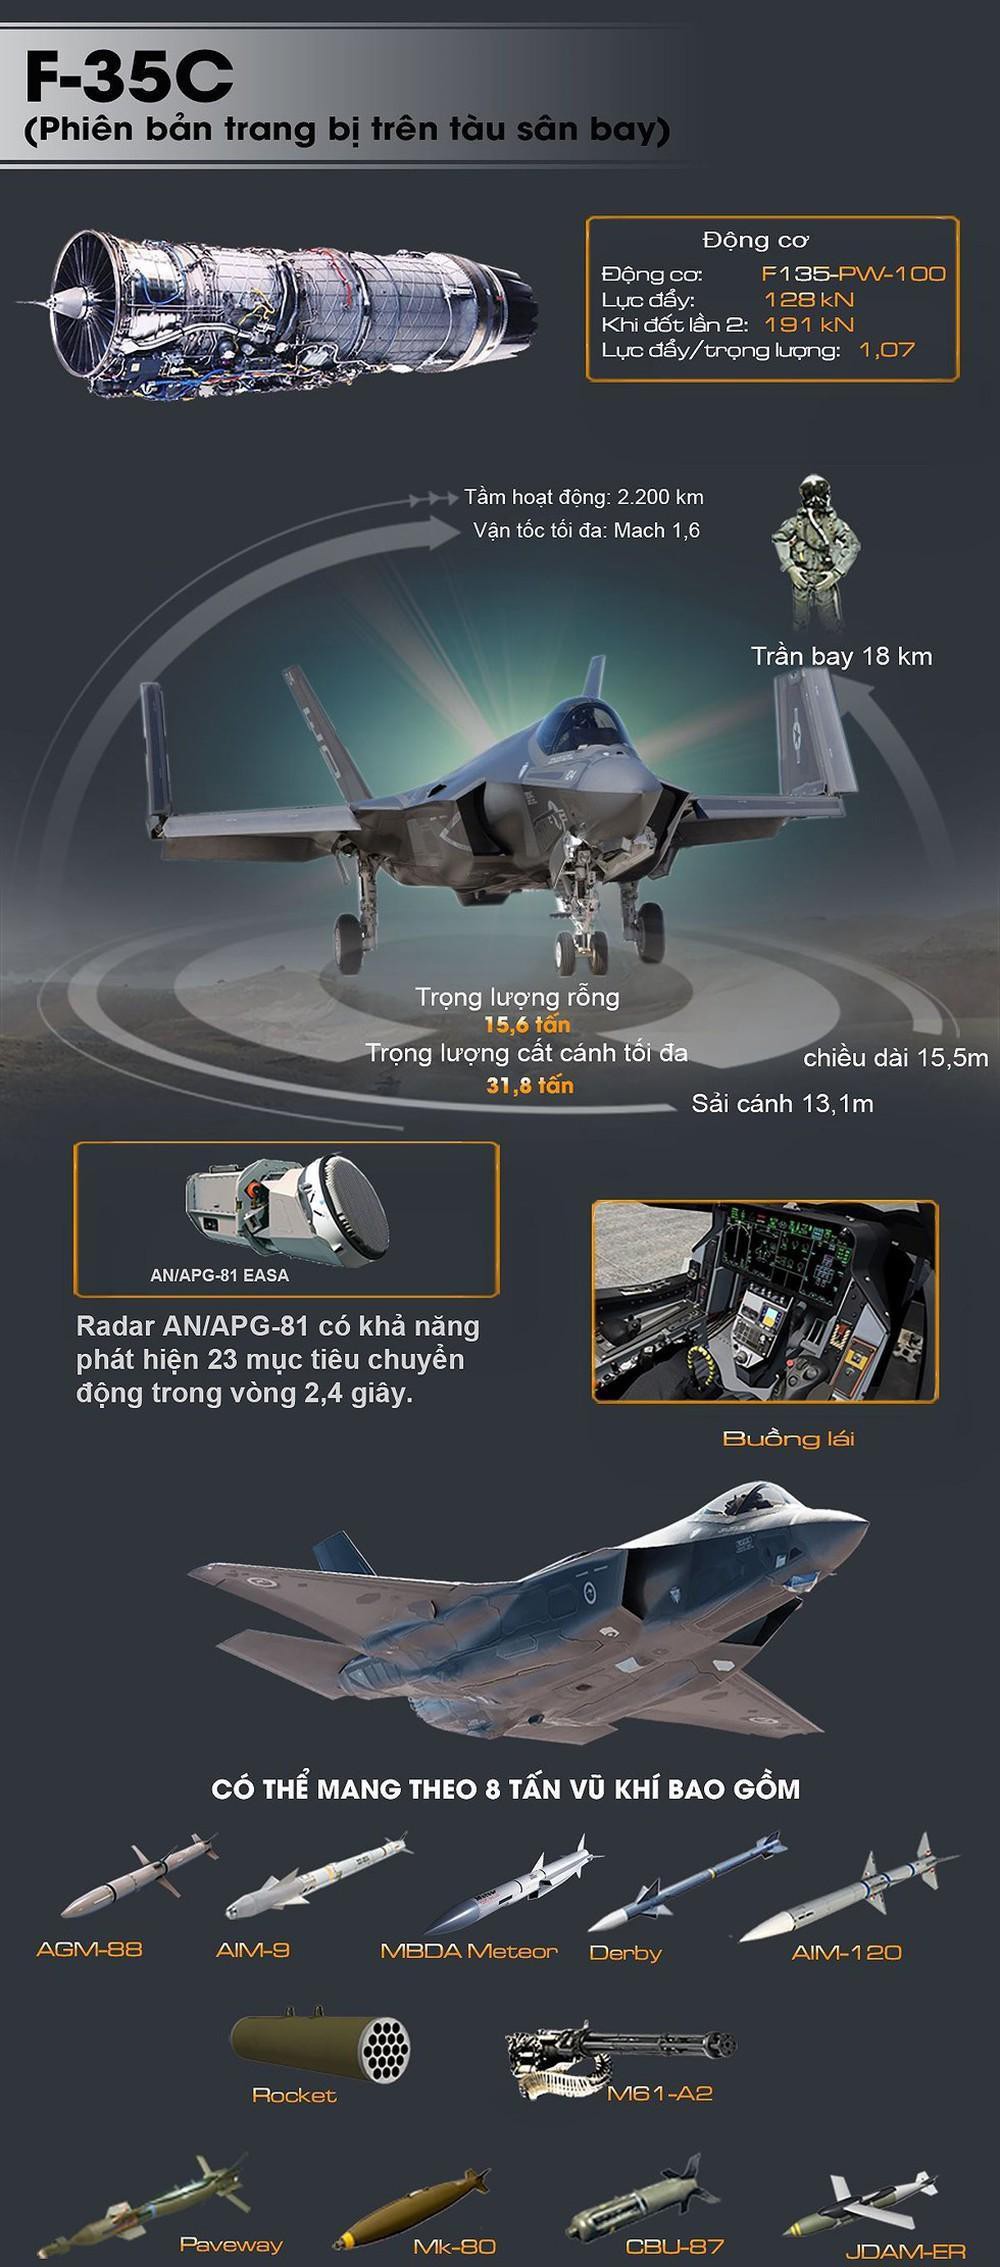 Hé lộ sức mạnh của tiêm kích hạm F-35C  - Ảnh 1